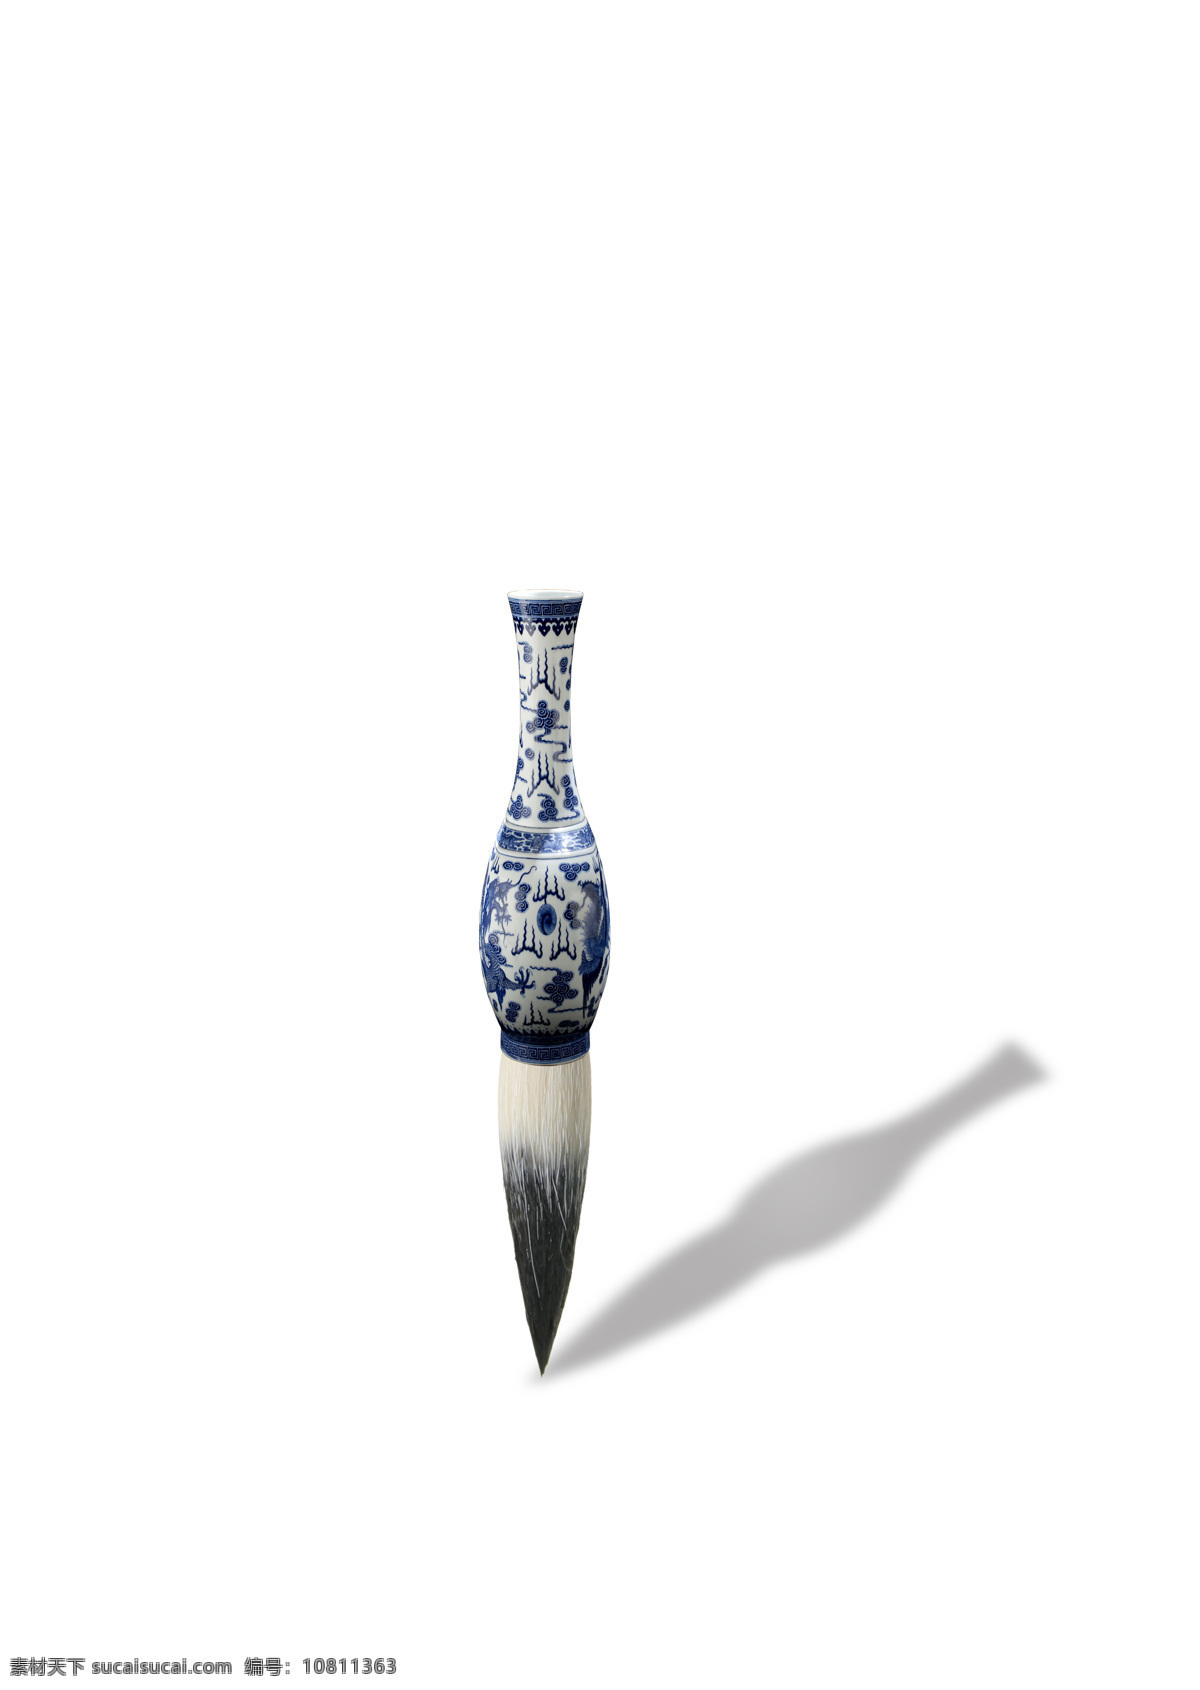 创意 毛笔 传统文化 瓷瓶 瓷器 青花瓷 文化艺术 艺术 创意毛笔 艺术气息 笔尖 psd源文件